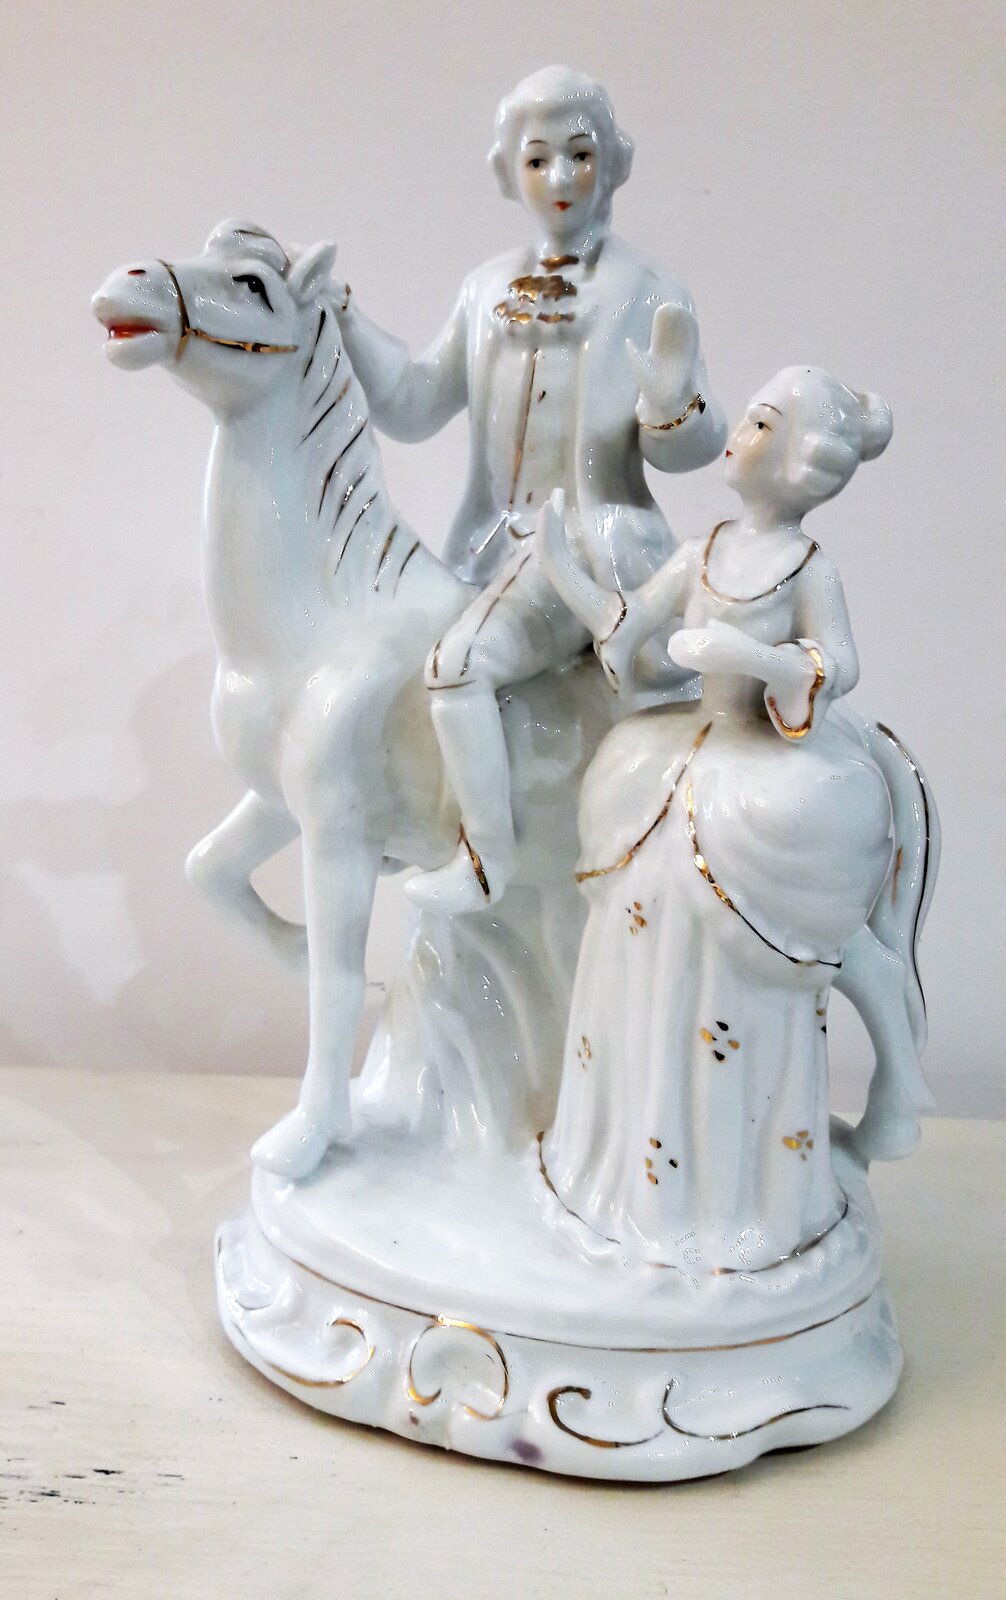 Ilustracja przedstawia porcelanową figurkę manufaktury bawarskiej, przedstawiającą mężczyznę na koniu i stojącą obok kobietę. Postacie mają na sobie bogate stroje. Kobieta zwrócona jest w stronę mężczyzny, prawdopodobnie rozmawiają. Mężczyzna jedną ręką trzyma konia, drugą gestykuluje. Łeb konia uniesiony jest w górę.